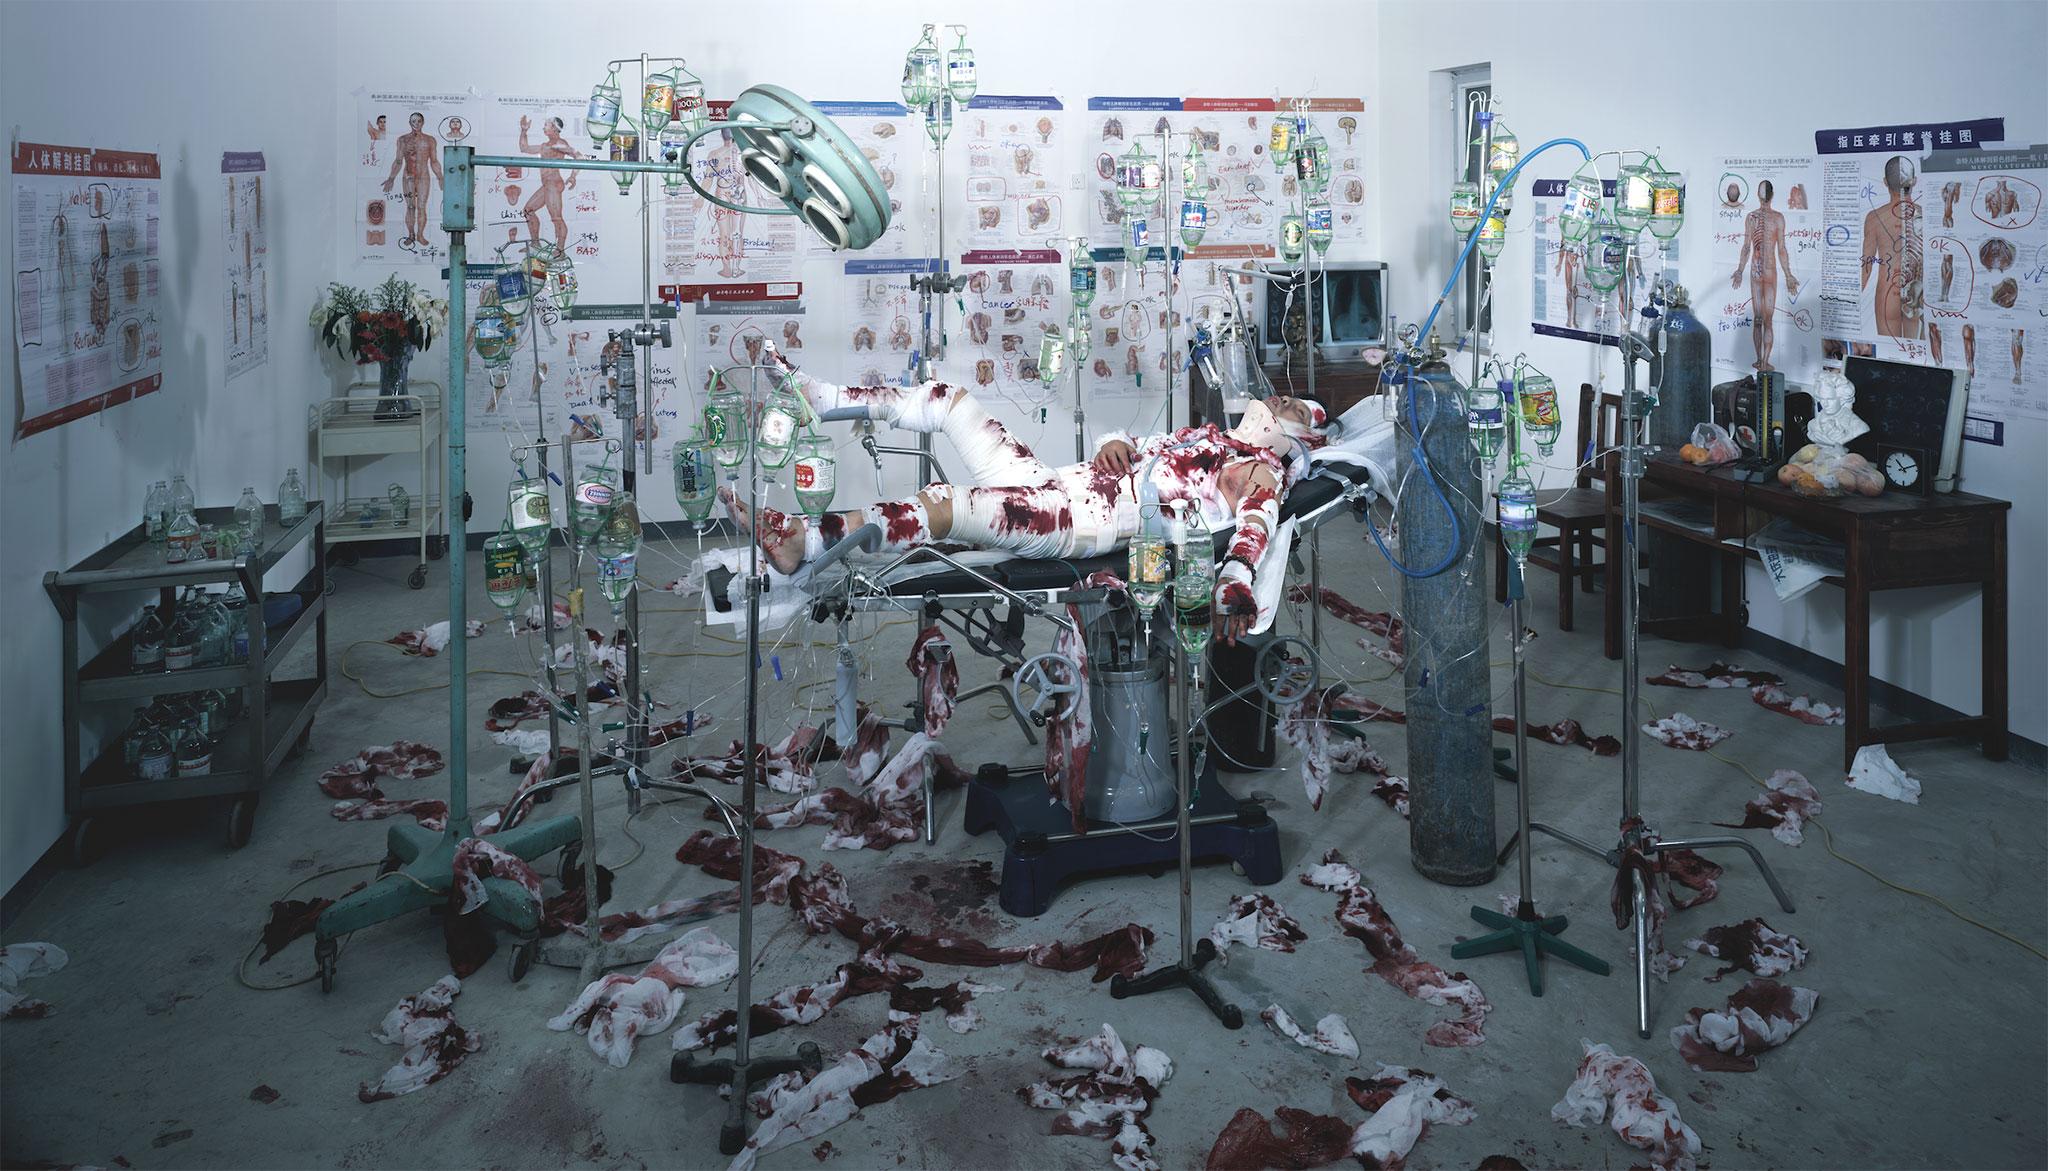 Wang Qingsong, ICU (Intensive Care Unit), 2013. C-print, 180 x 300 cm 